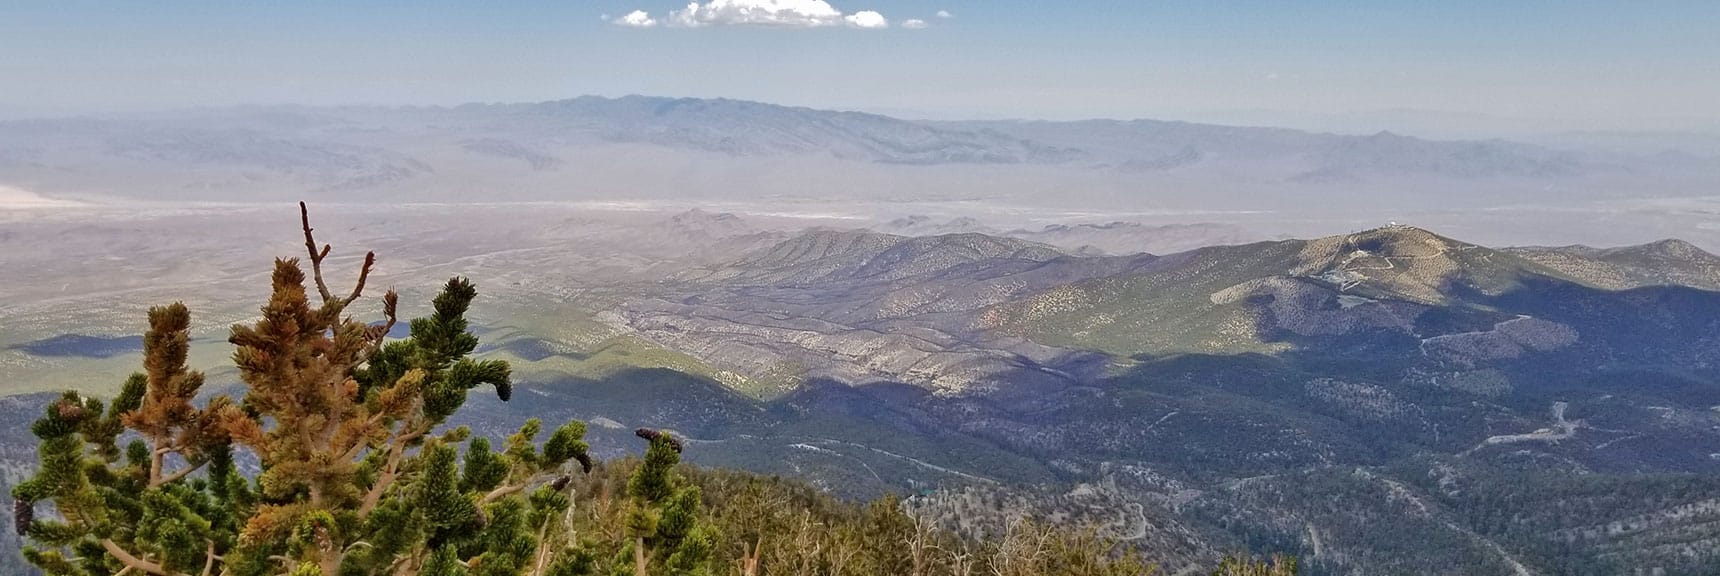 Sheep Range Viewed from Mummy Mountain's Northeastern Cliffs | Mummy Mountain NNE, Mt. Charleston Wilderness, Nevada, Slide 028